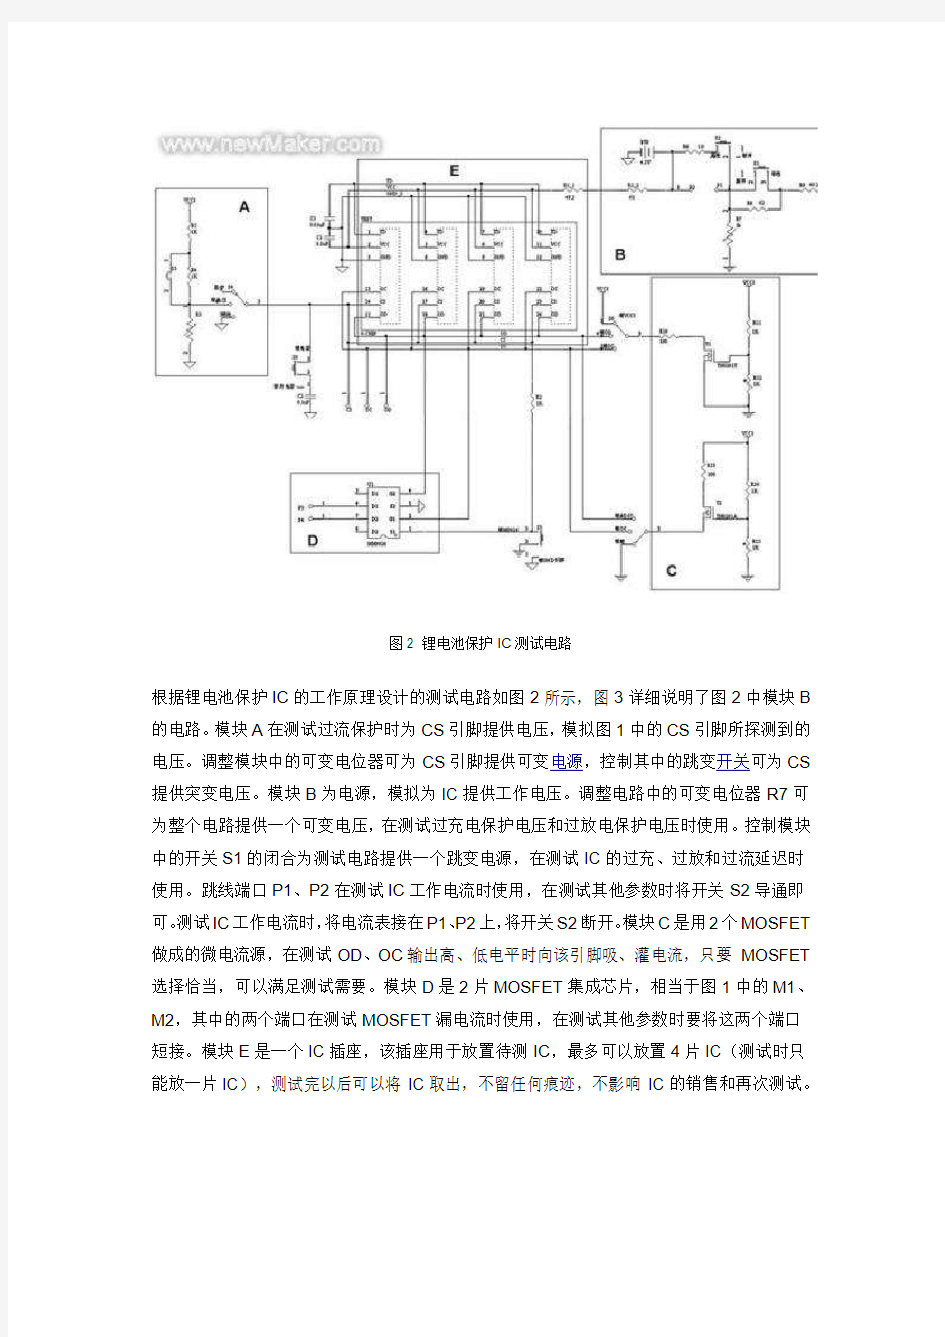 简易锂电池保护IC 测试电路的设计